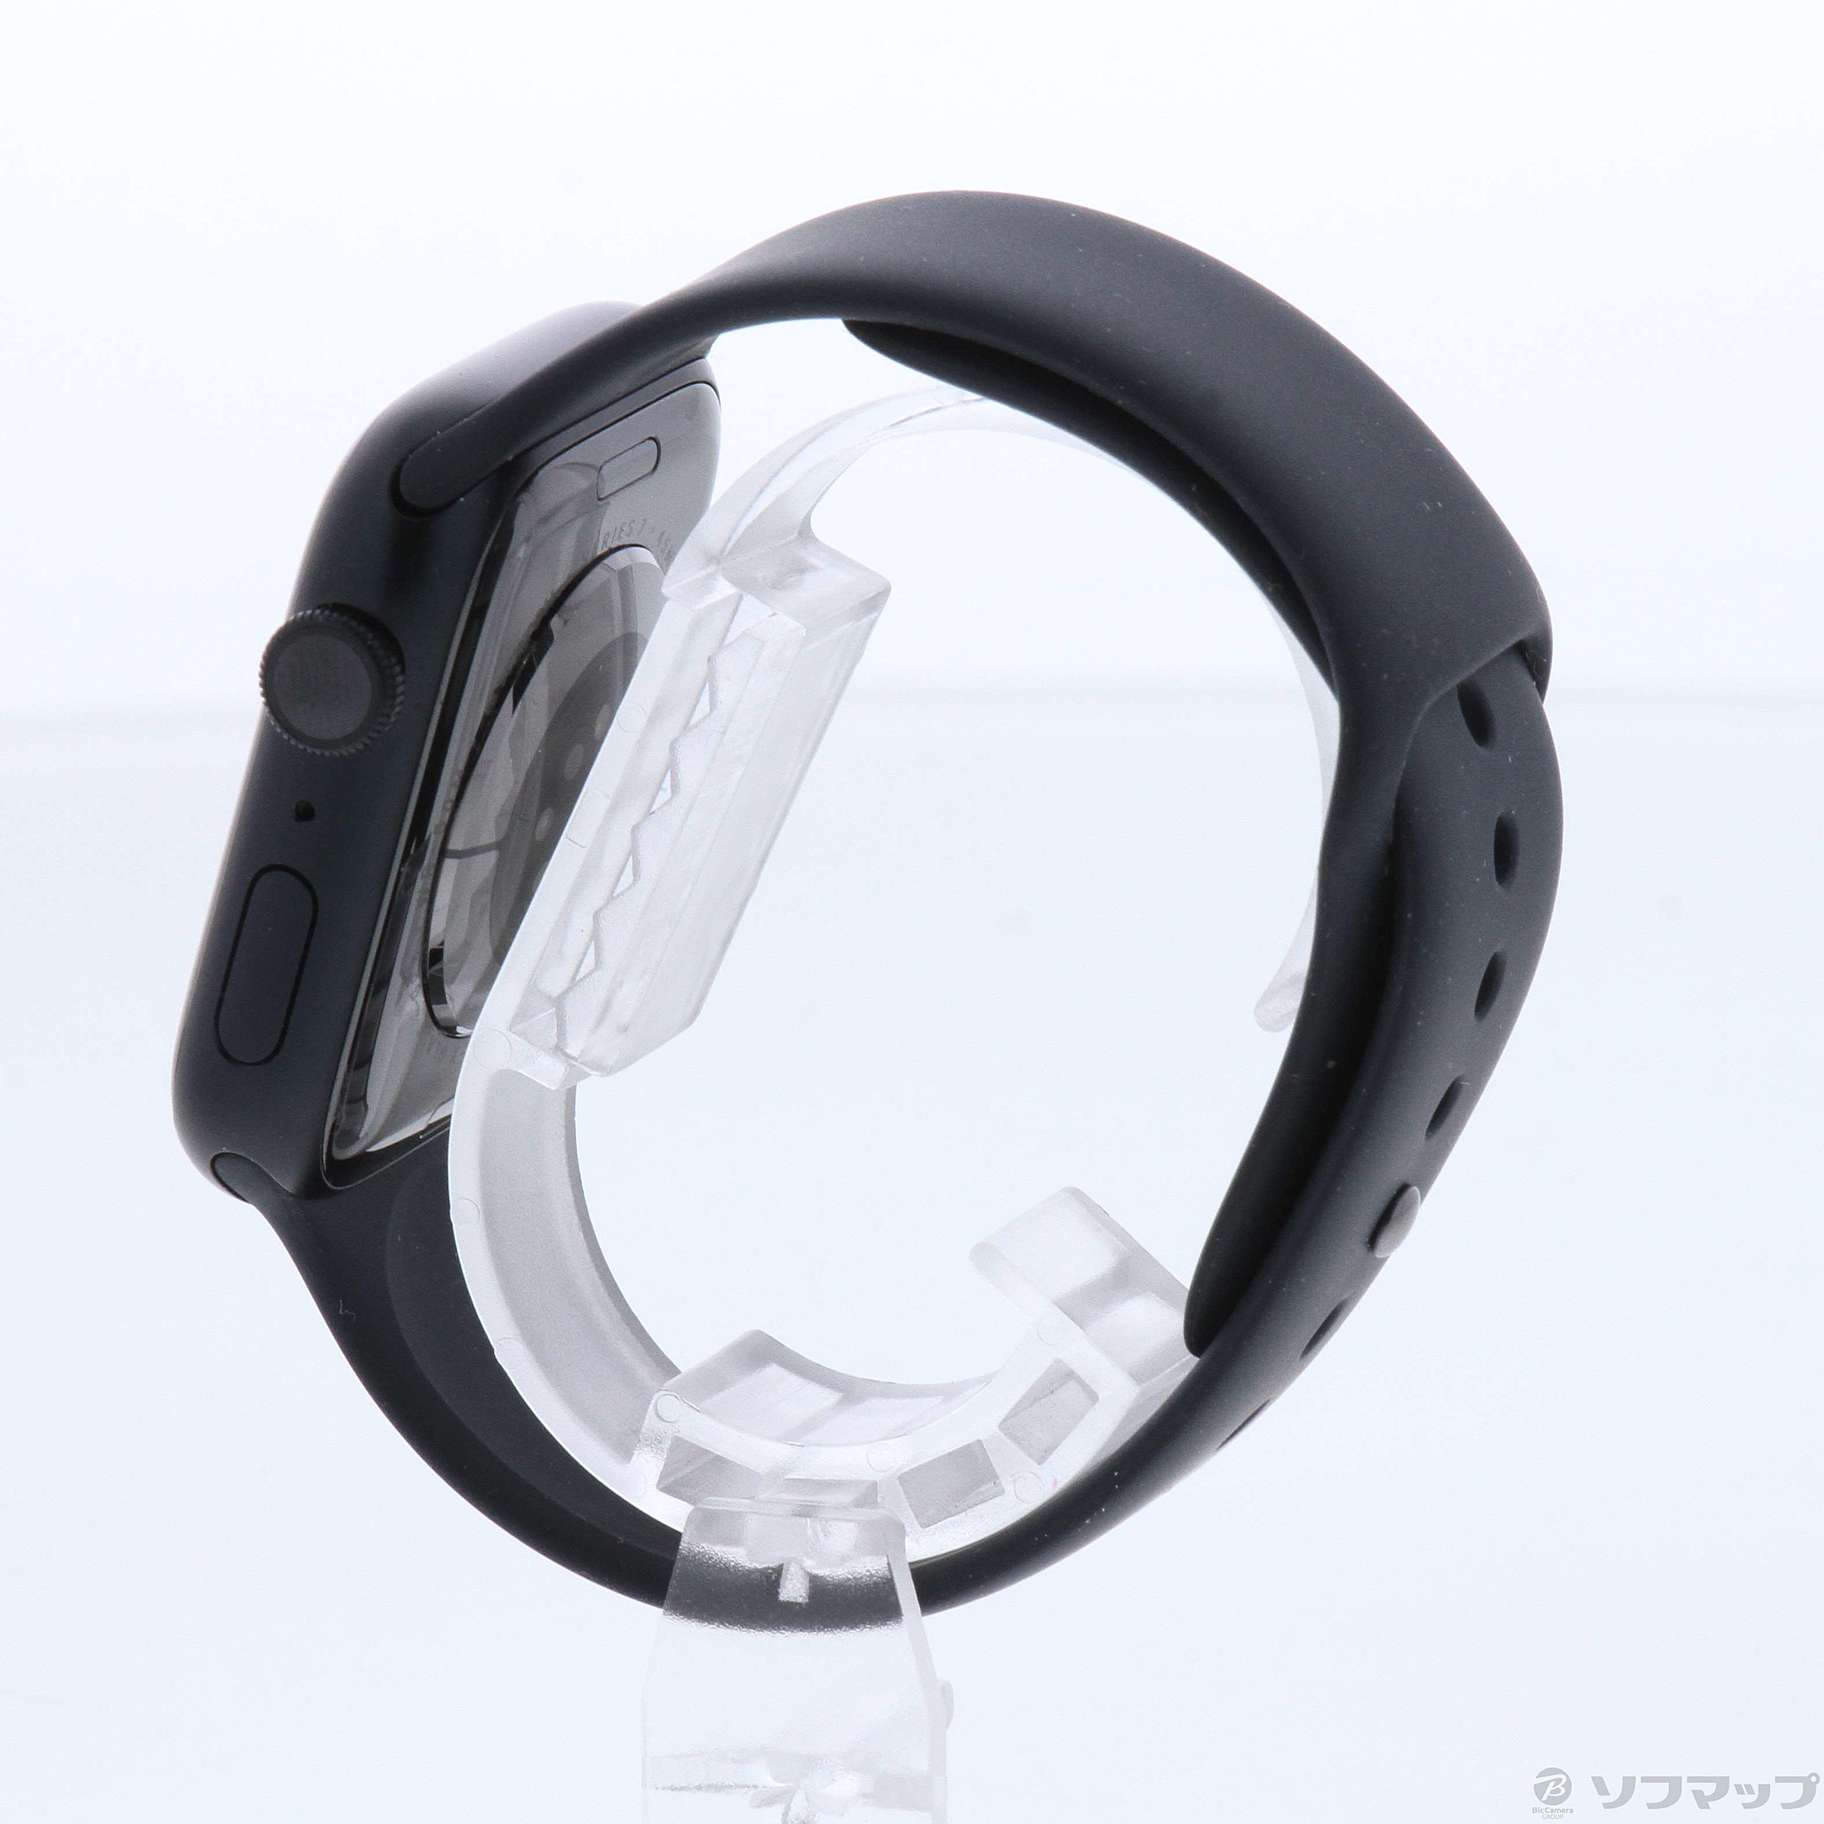 Apple アップル Apple Watch Series 7 GPSモデル 45mm MKN53J/A ミッドナイトスポーツバンド - スマート ウォッチ、ウェアラブル端末